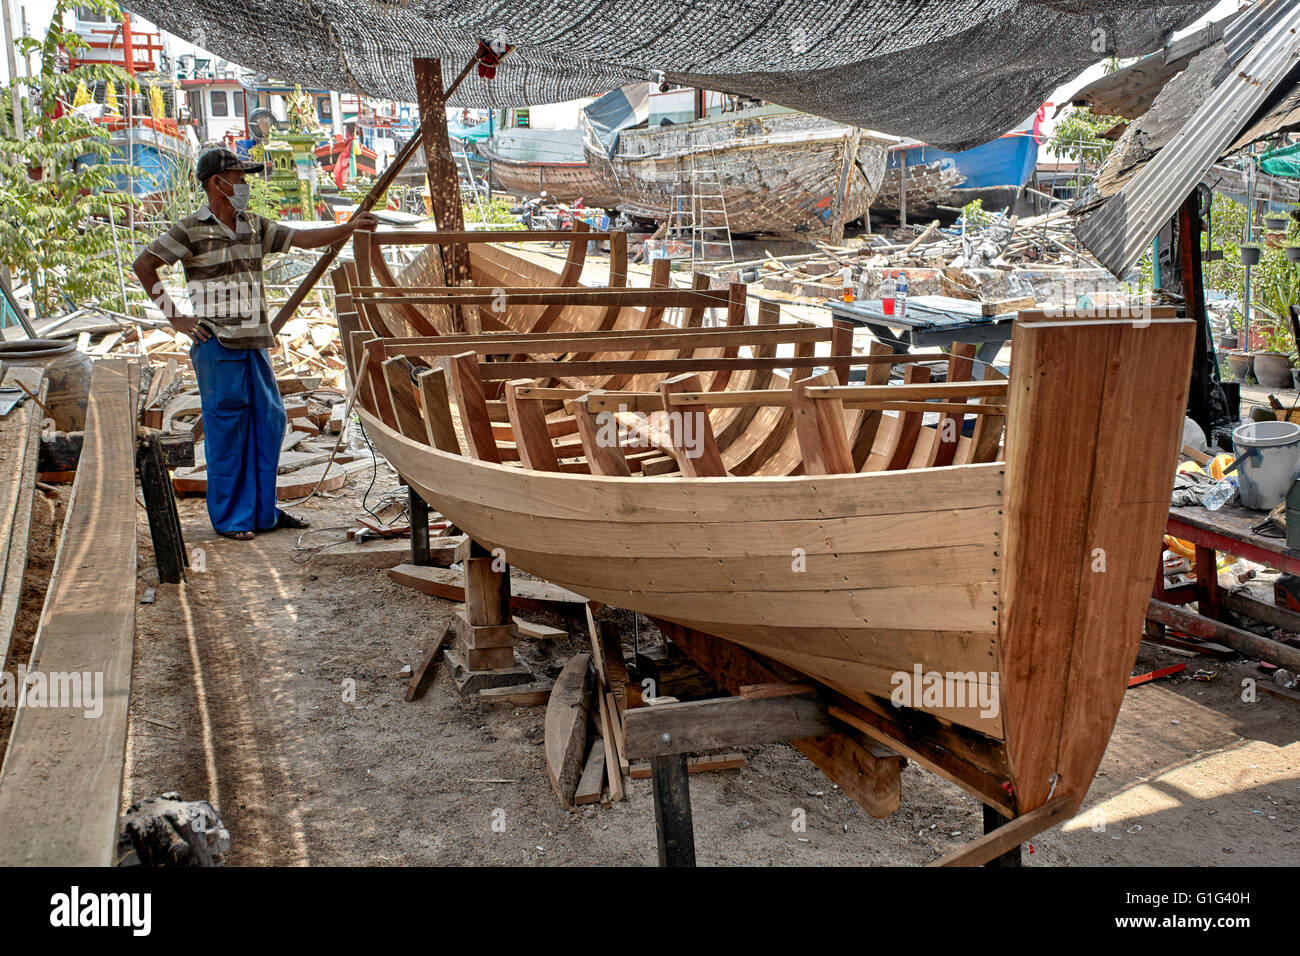 Thailändischer Bootsbauer. Handwerker bauen ein traditionelles Holzboot. Thailand S. E. Asien Stockfoto